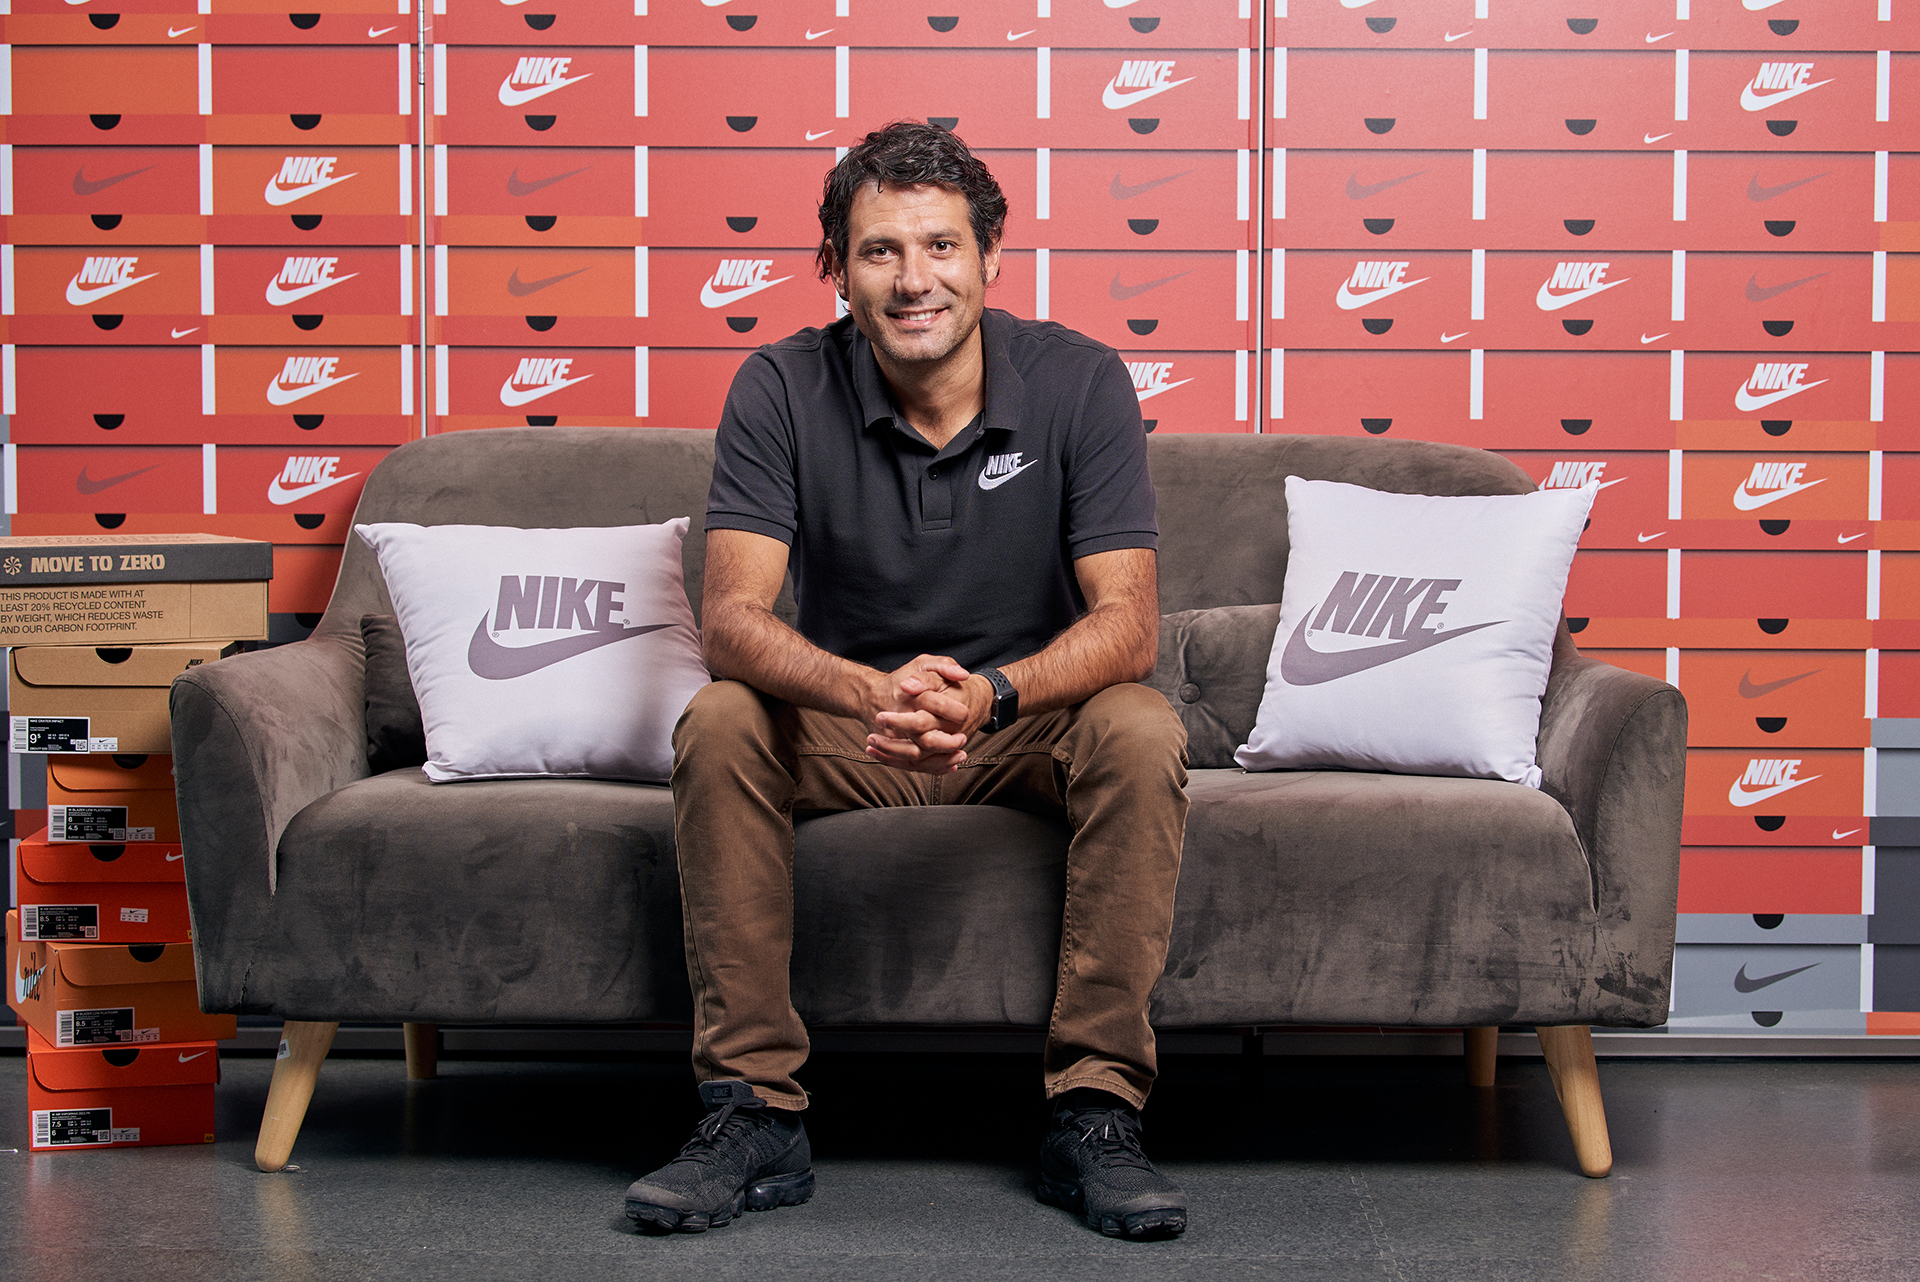 Exclusivo: Nike adelanta los planes para corto y mediano plazo de la marca en la Argentina - Forbes Argentina